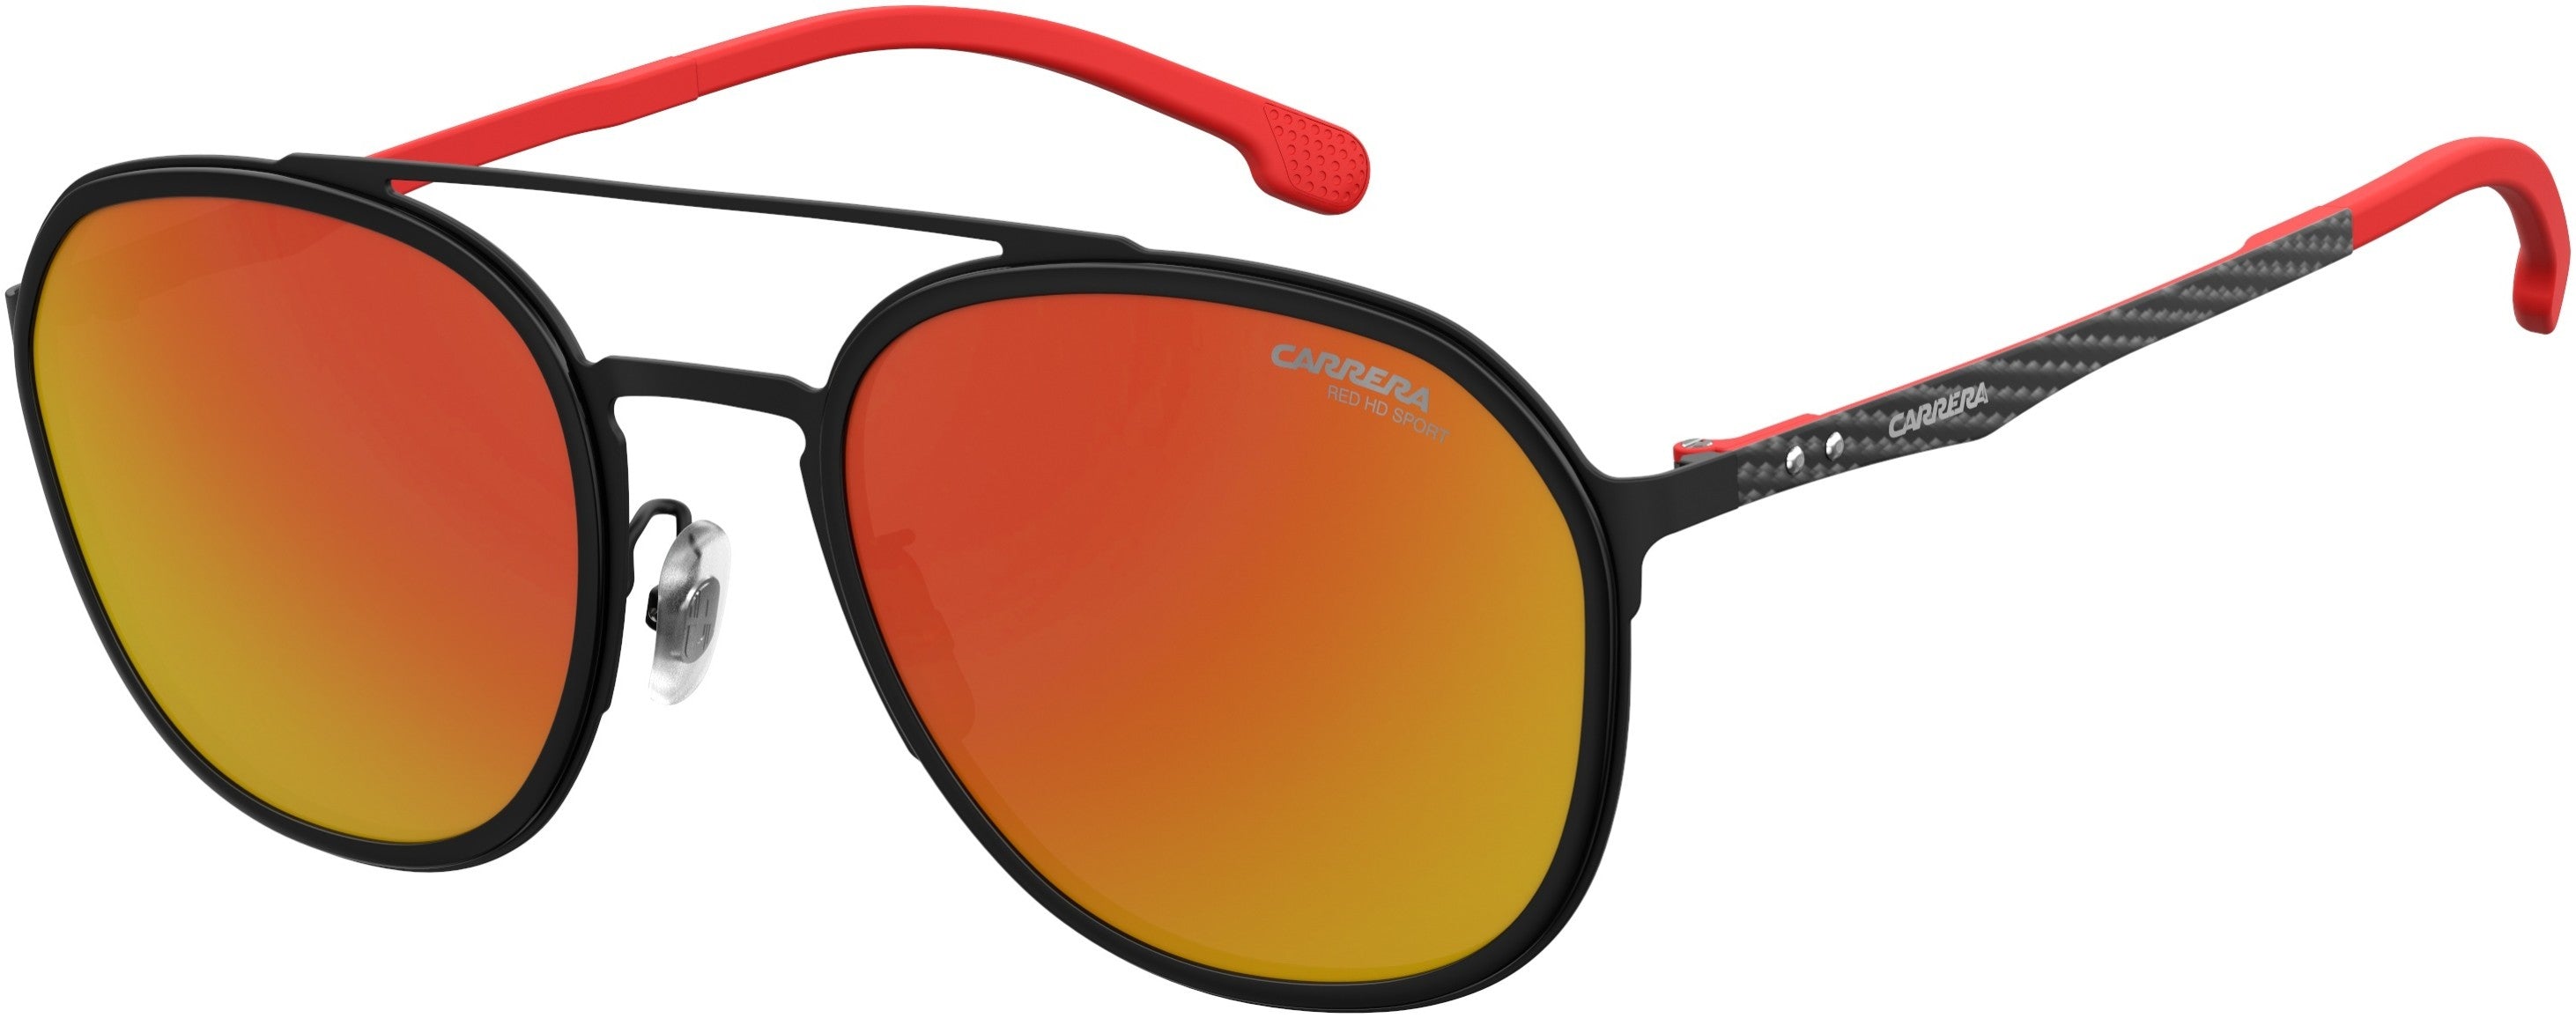  Carrera 8033/gs Oval Modified Sunglasses 0003-0003  Matte Black (W3 Red Hd Ml Ol)